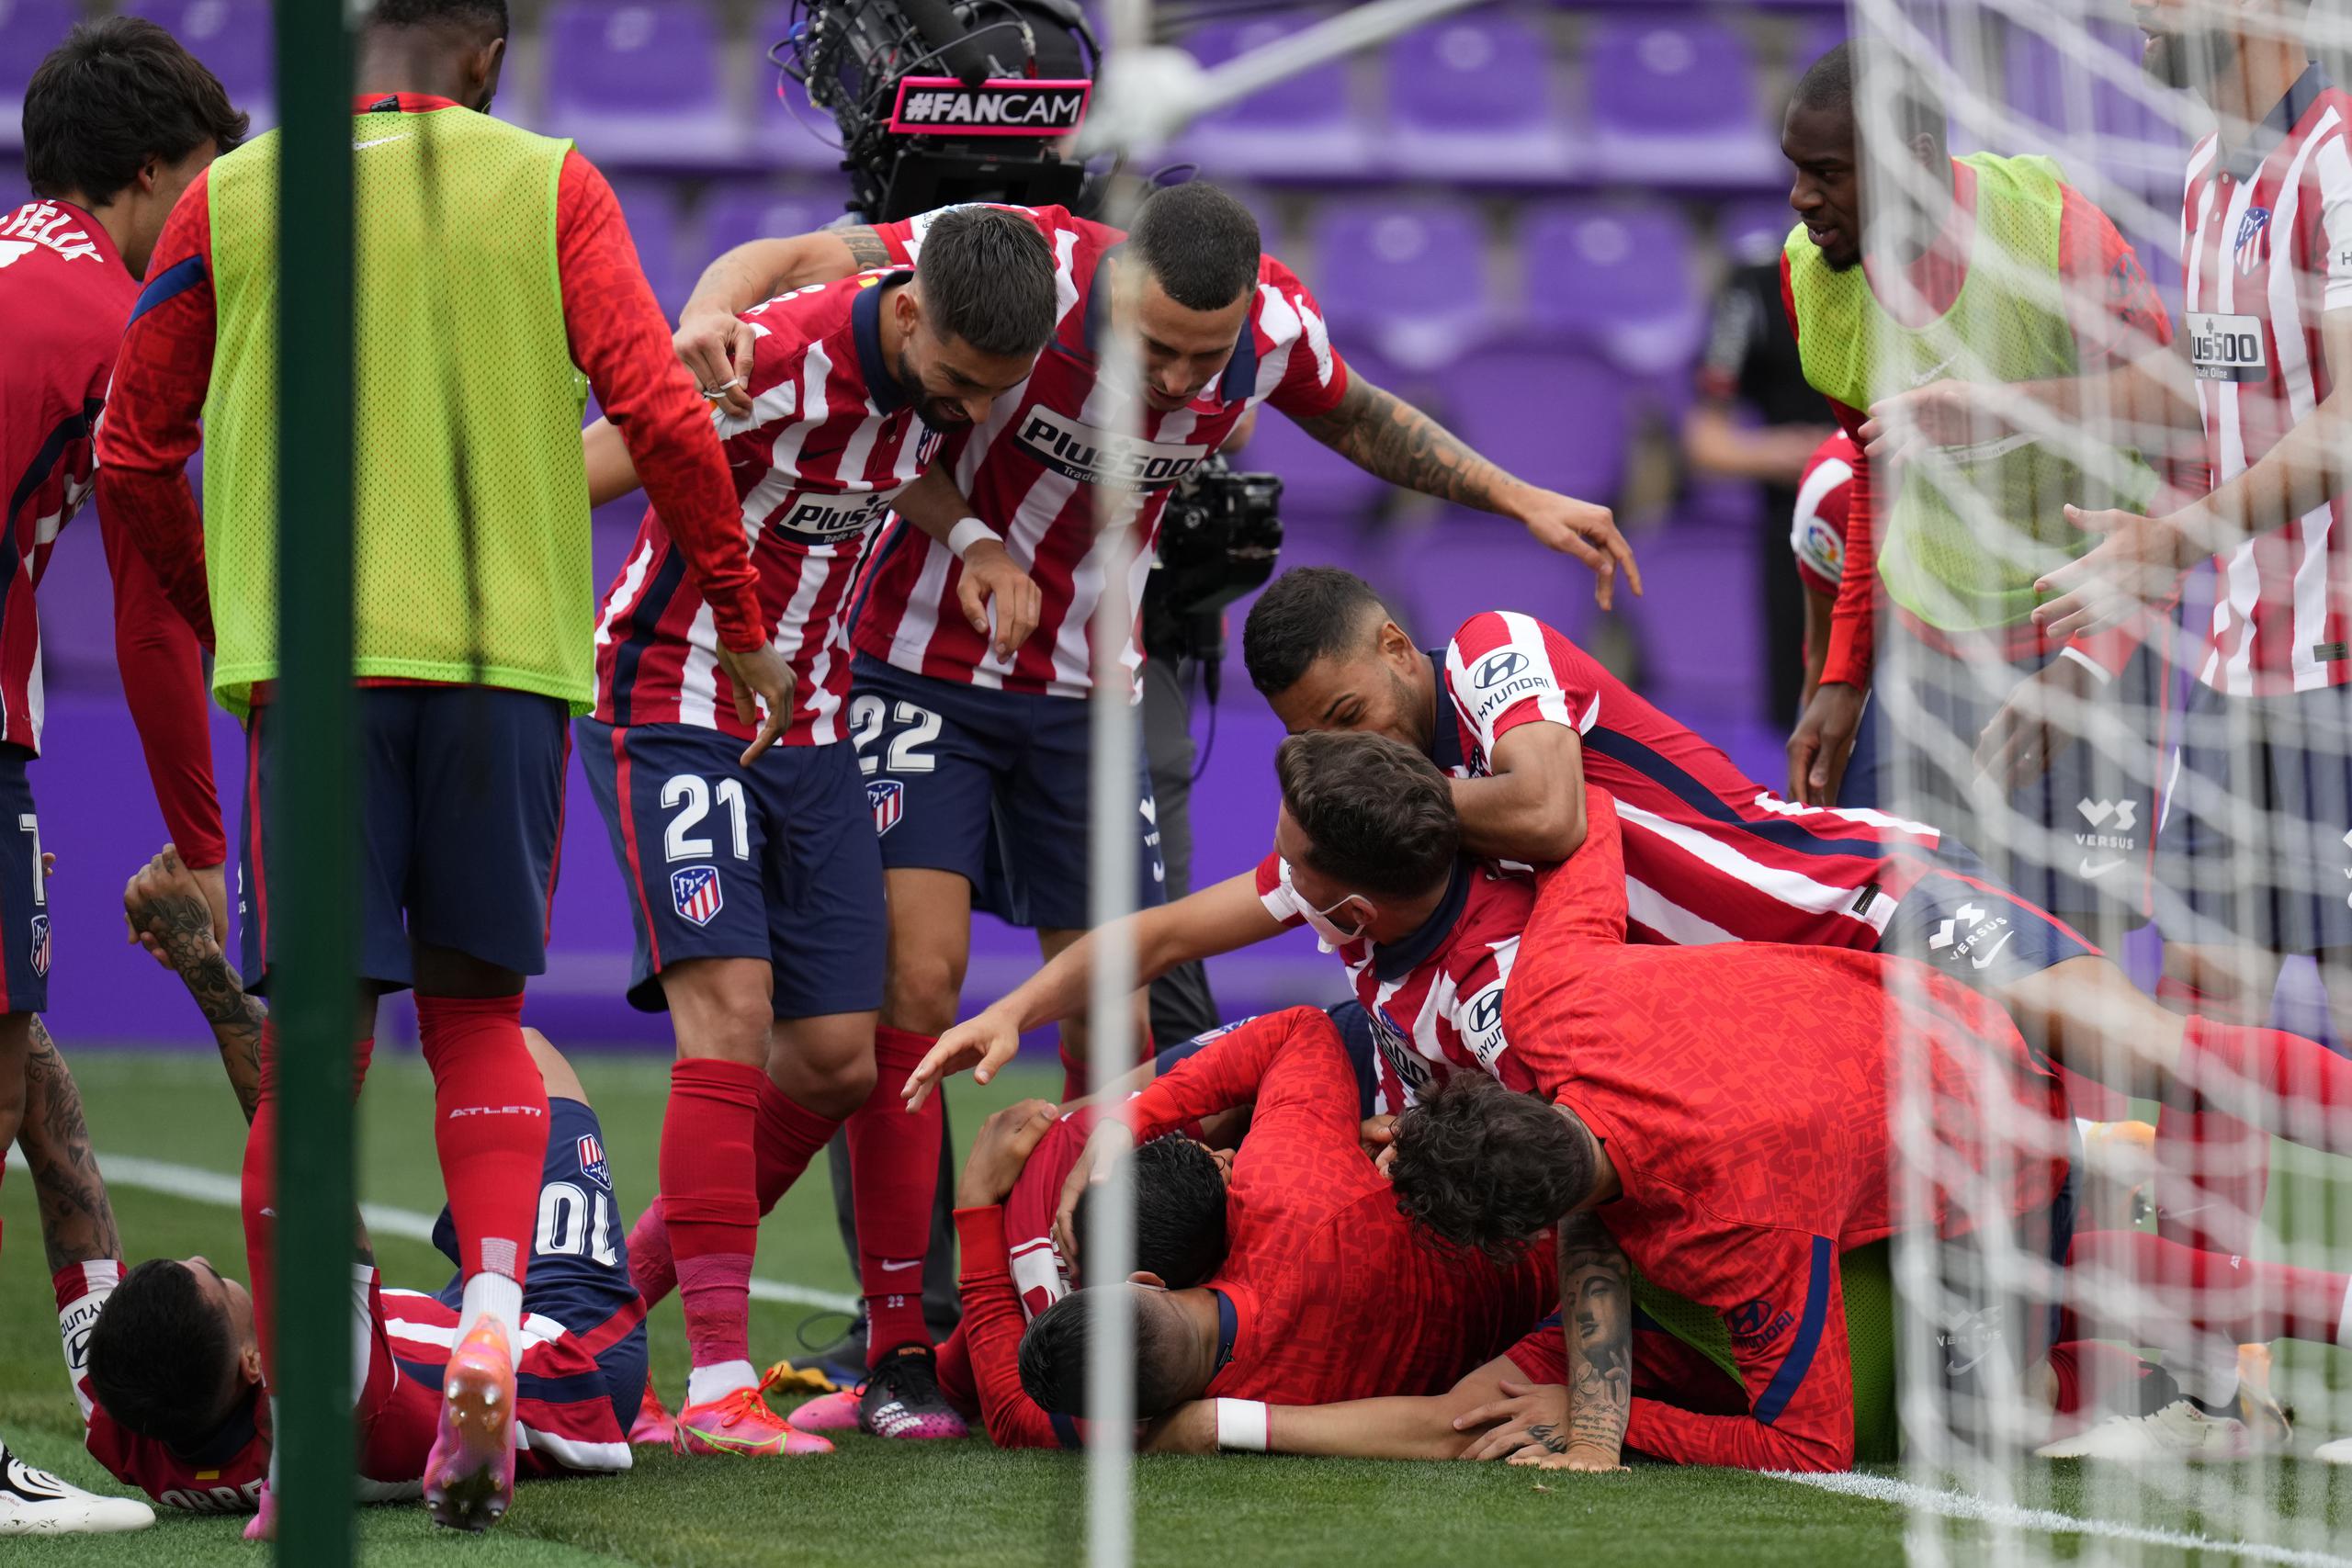 Los jugadores del Atlético de Madrid celebran con Luis Suárez luego que éste anotó el segundo gol del Atlético de Madrid en la victoria 2-1 contra Valladolid por la Liga española.